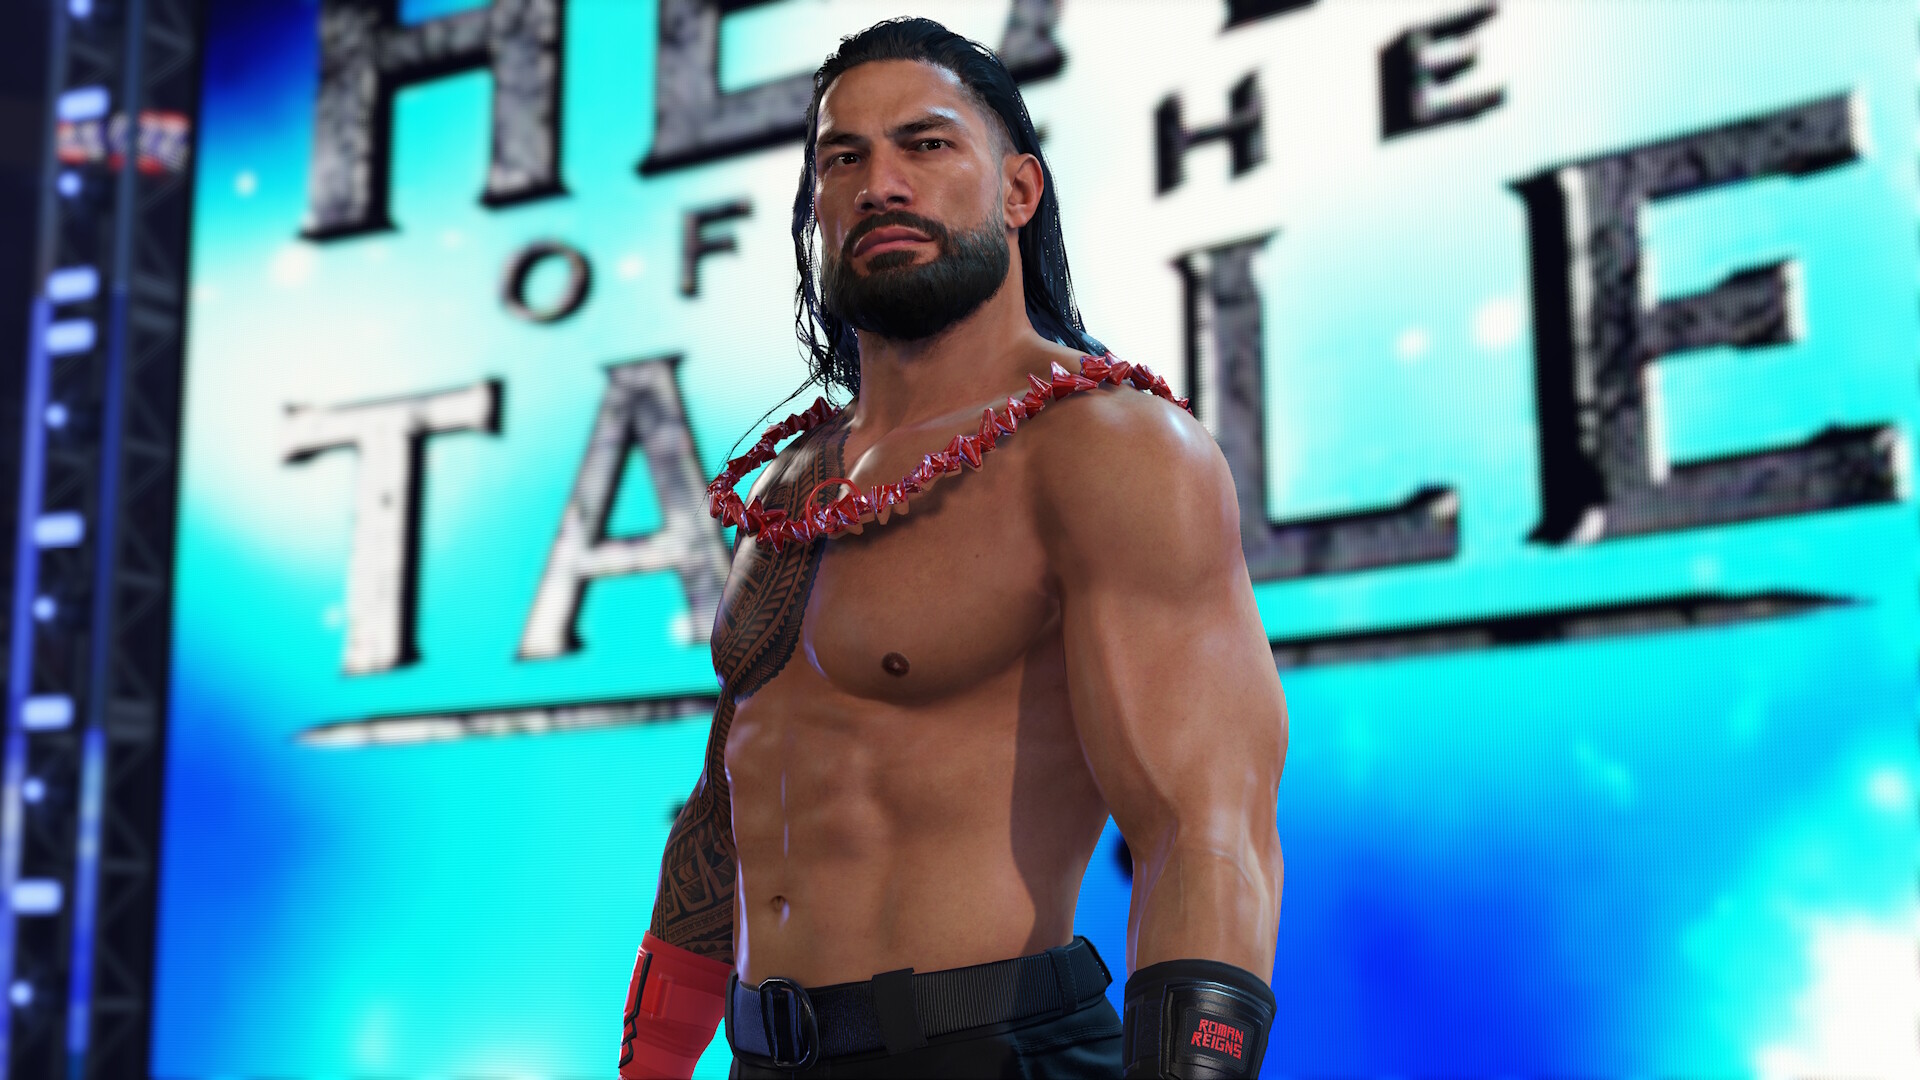 Utvecklarna av WWE 2K24 har släppt en ny trailer för spelet, som visar två storylines: Unleashed och Undisputed